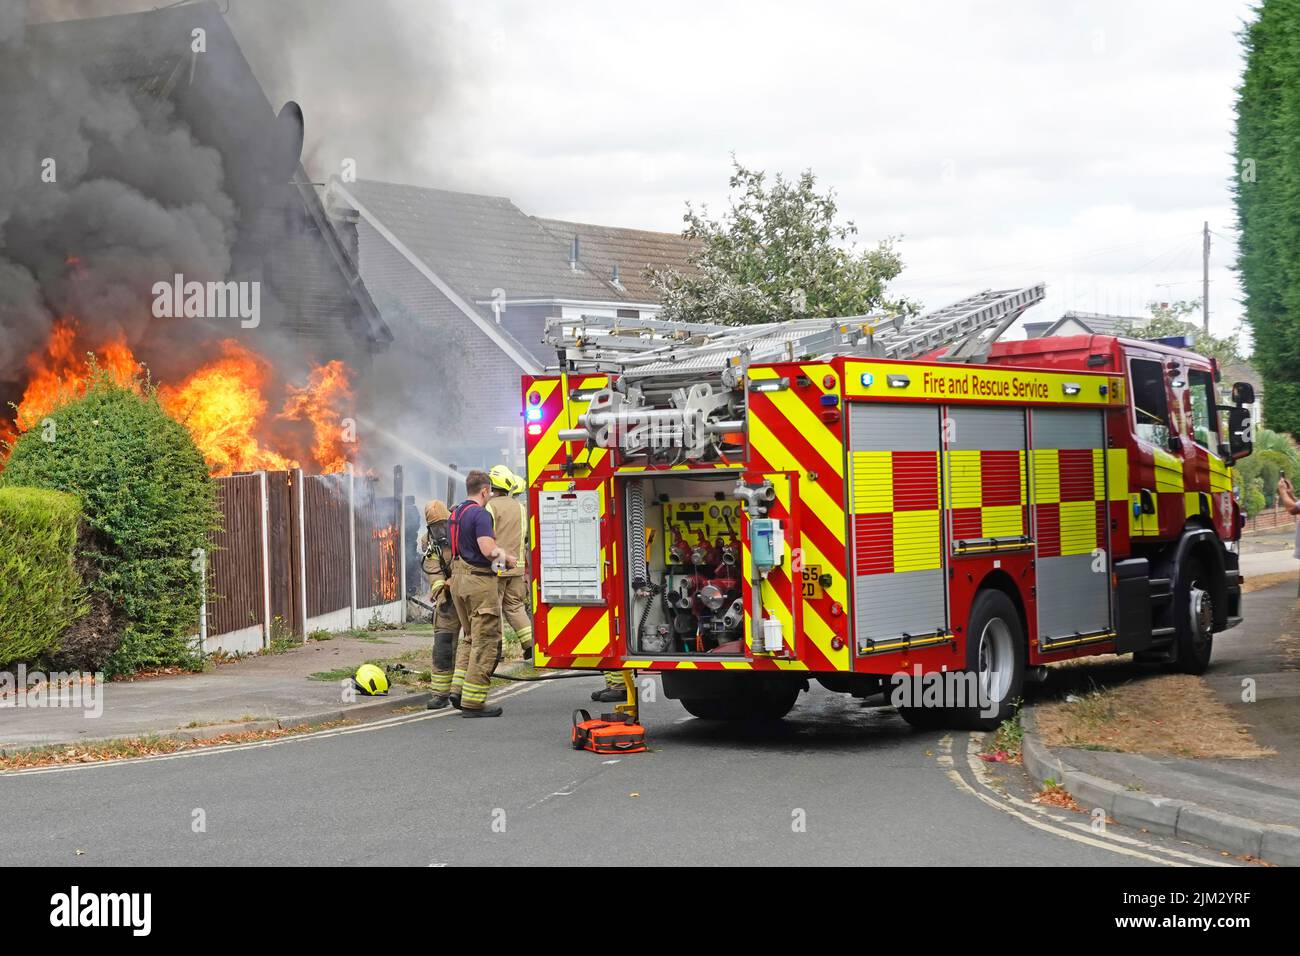 Flamme et fumée noire provenant du feu de maison alors que les pompiers arrivent dans le deuxième groupe de pompiers, le membre de l'équipe et le membre de l'équipe travaillent dans la rue résidentielle Essex, Angleterre, Royaume-Uni Banque D'Images